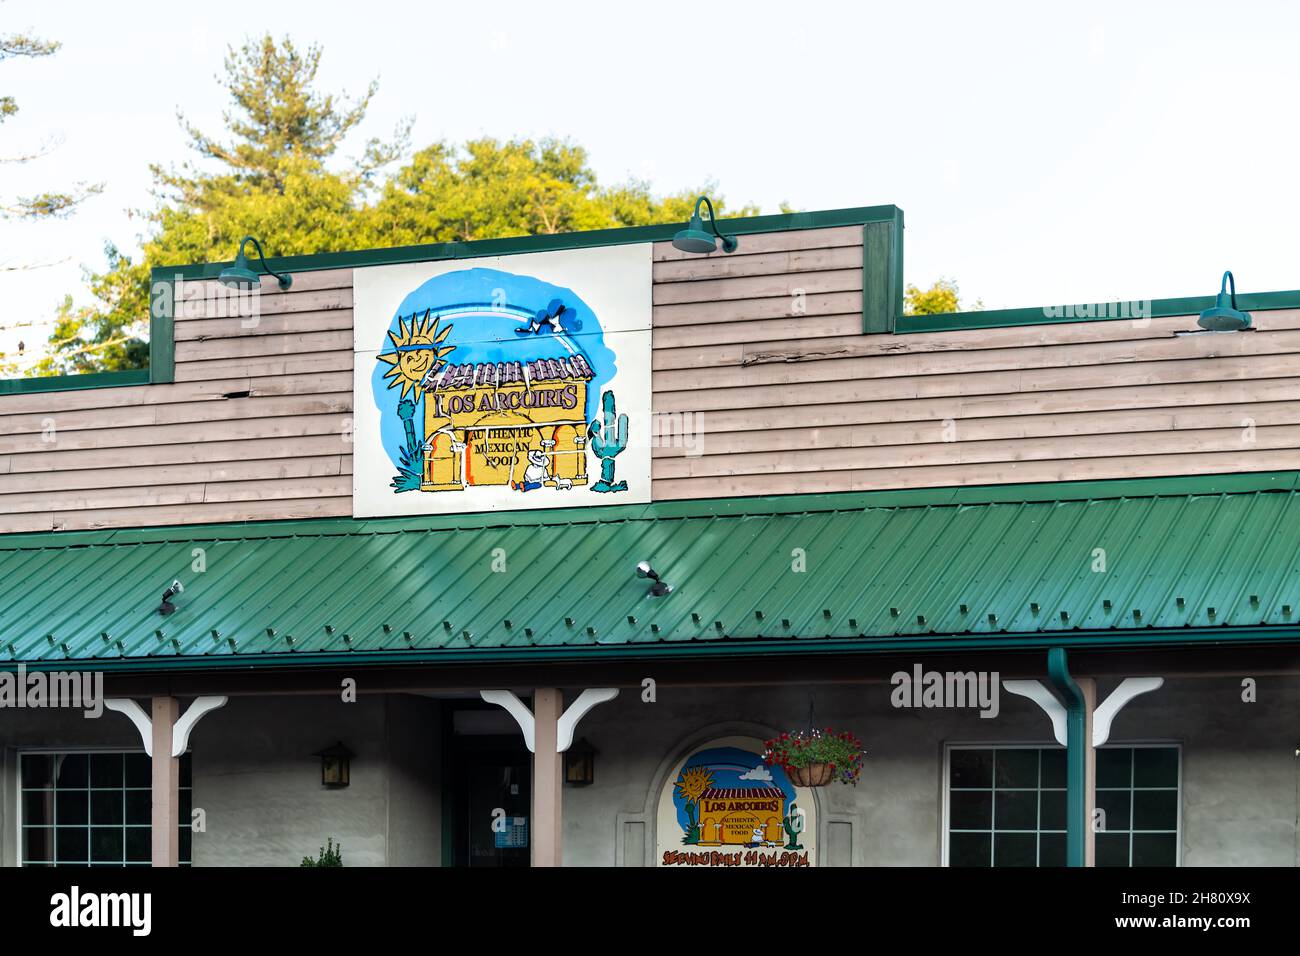 Newland, Estados Unidos - 23 de junio de 2021: Pequeño pueblo con letrero para el establecimiento de cadena Los Arcoiris restaurante mexicano que sirve auténtica comida en el edificio Foto de stock